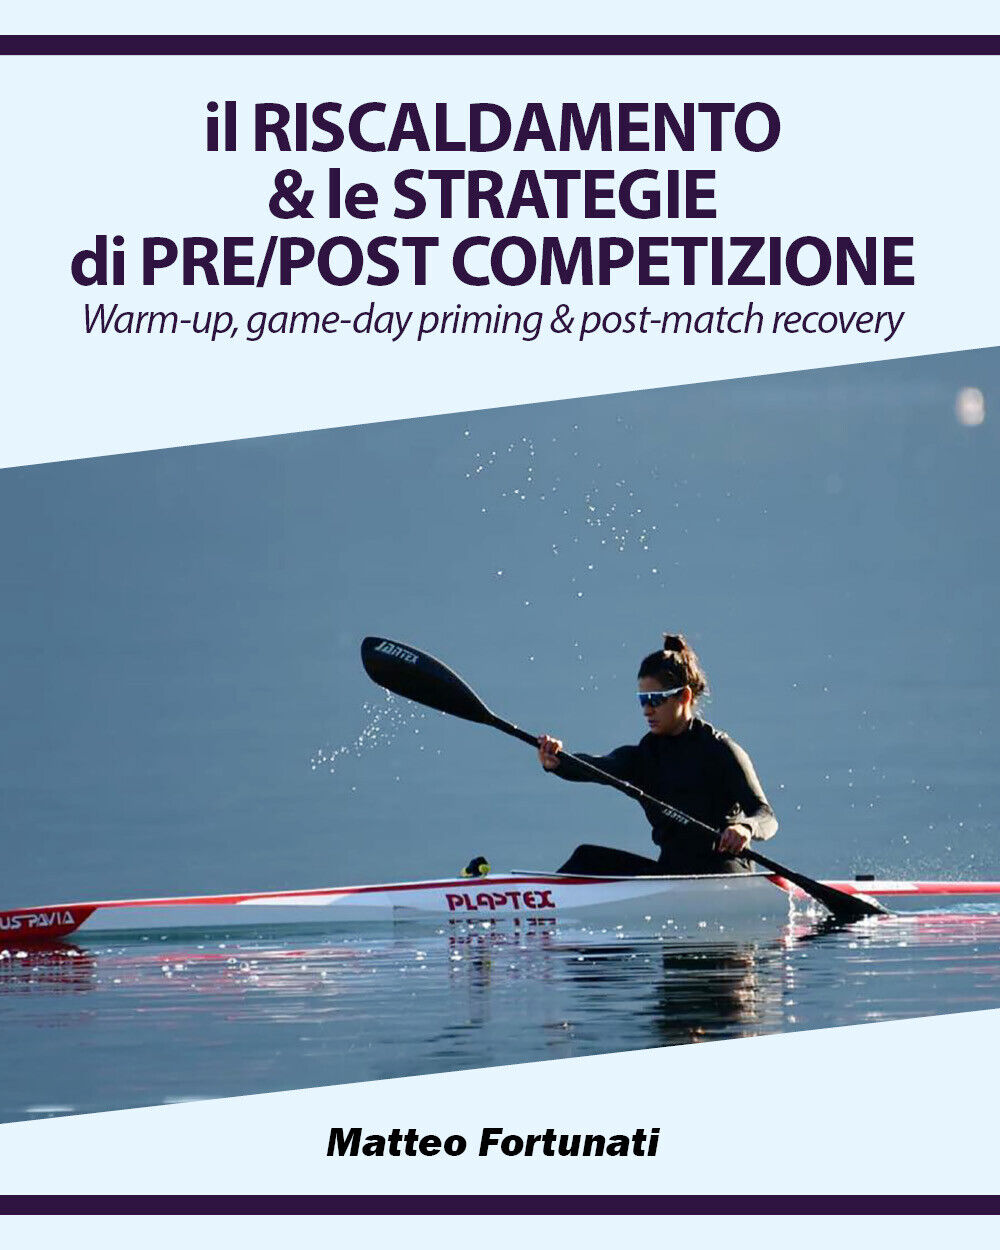 Il Riscaldamento & le Strategie di Pre/Post Competizione di Matteo Fortunati,  2